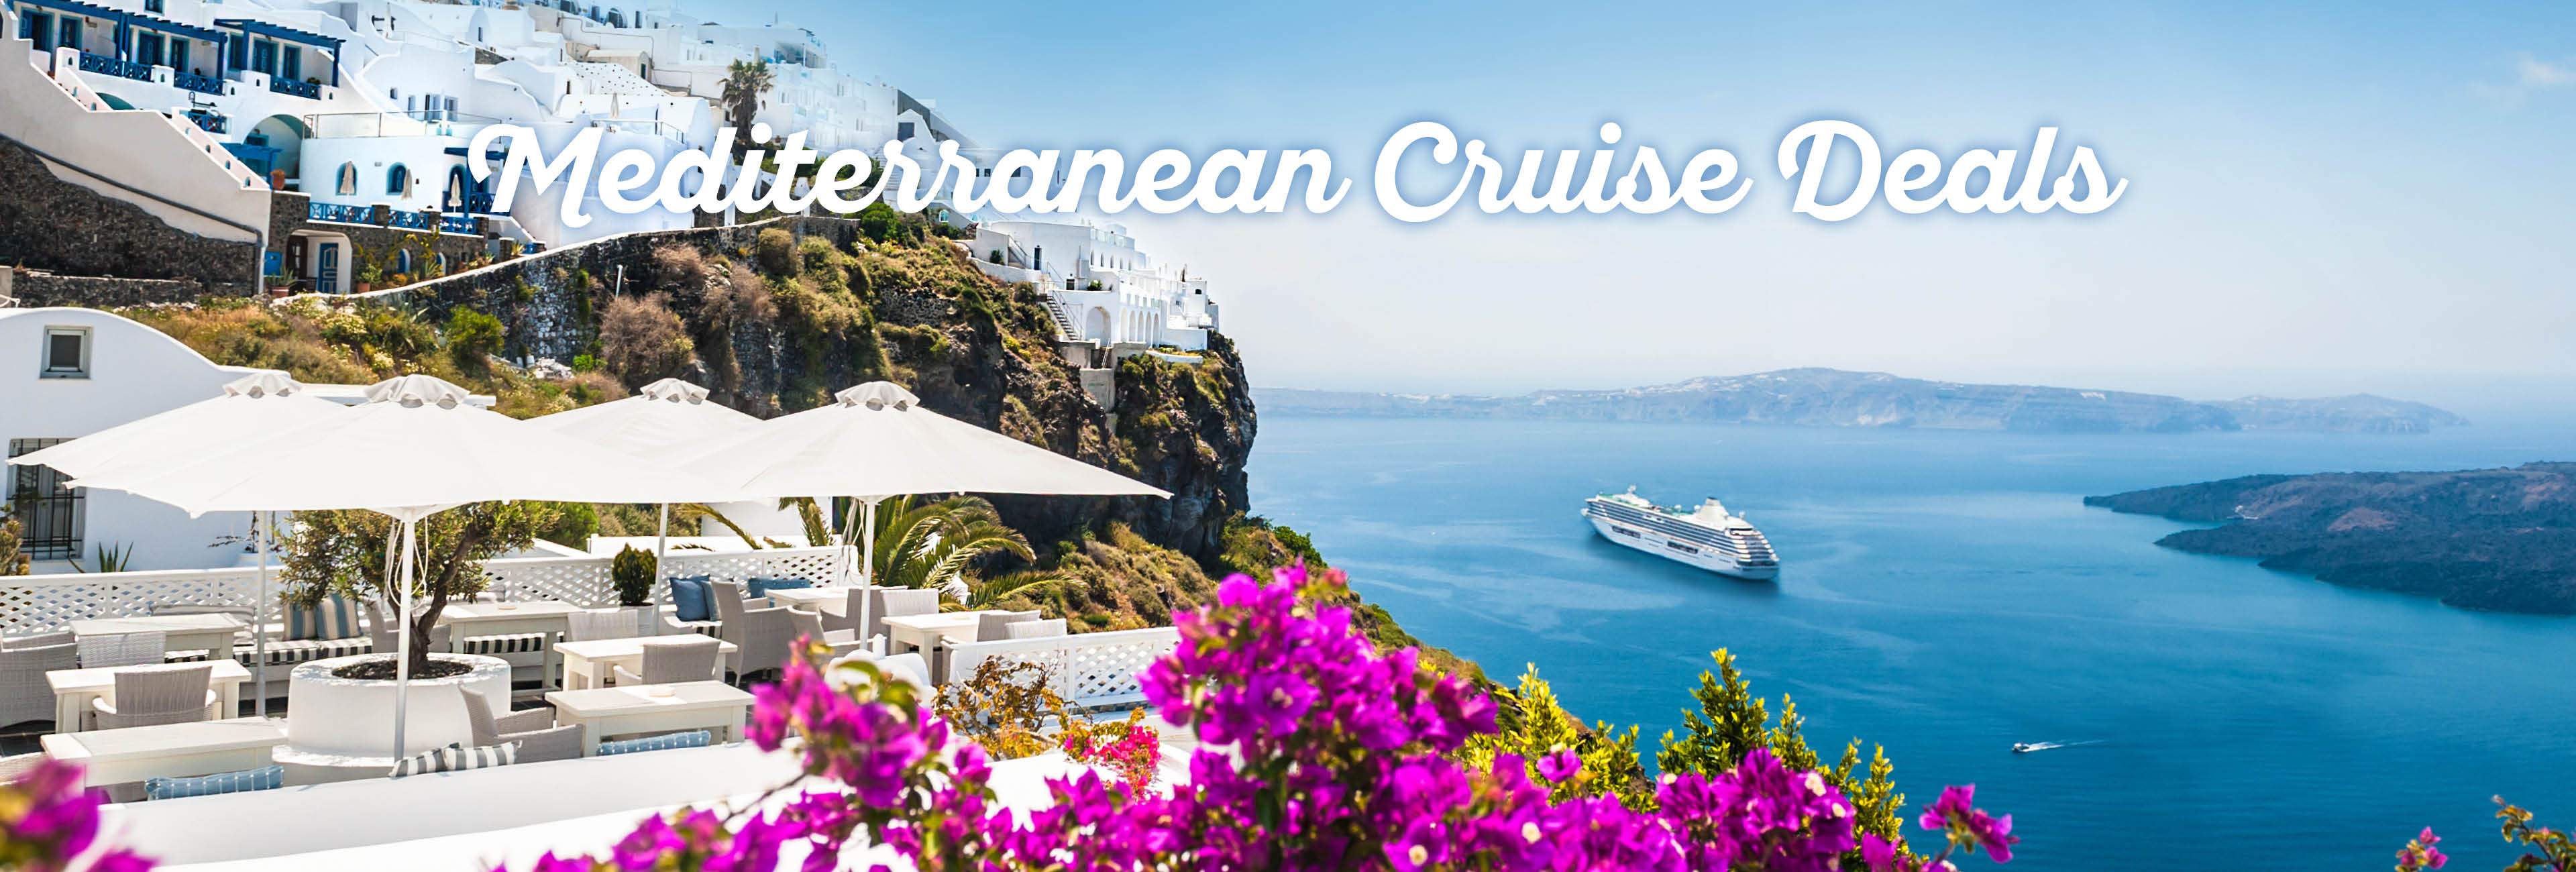 mediterranean-cruise-deals1.jpg